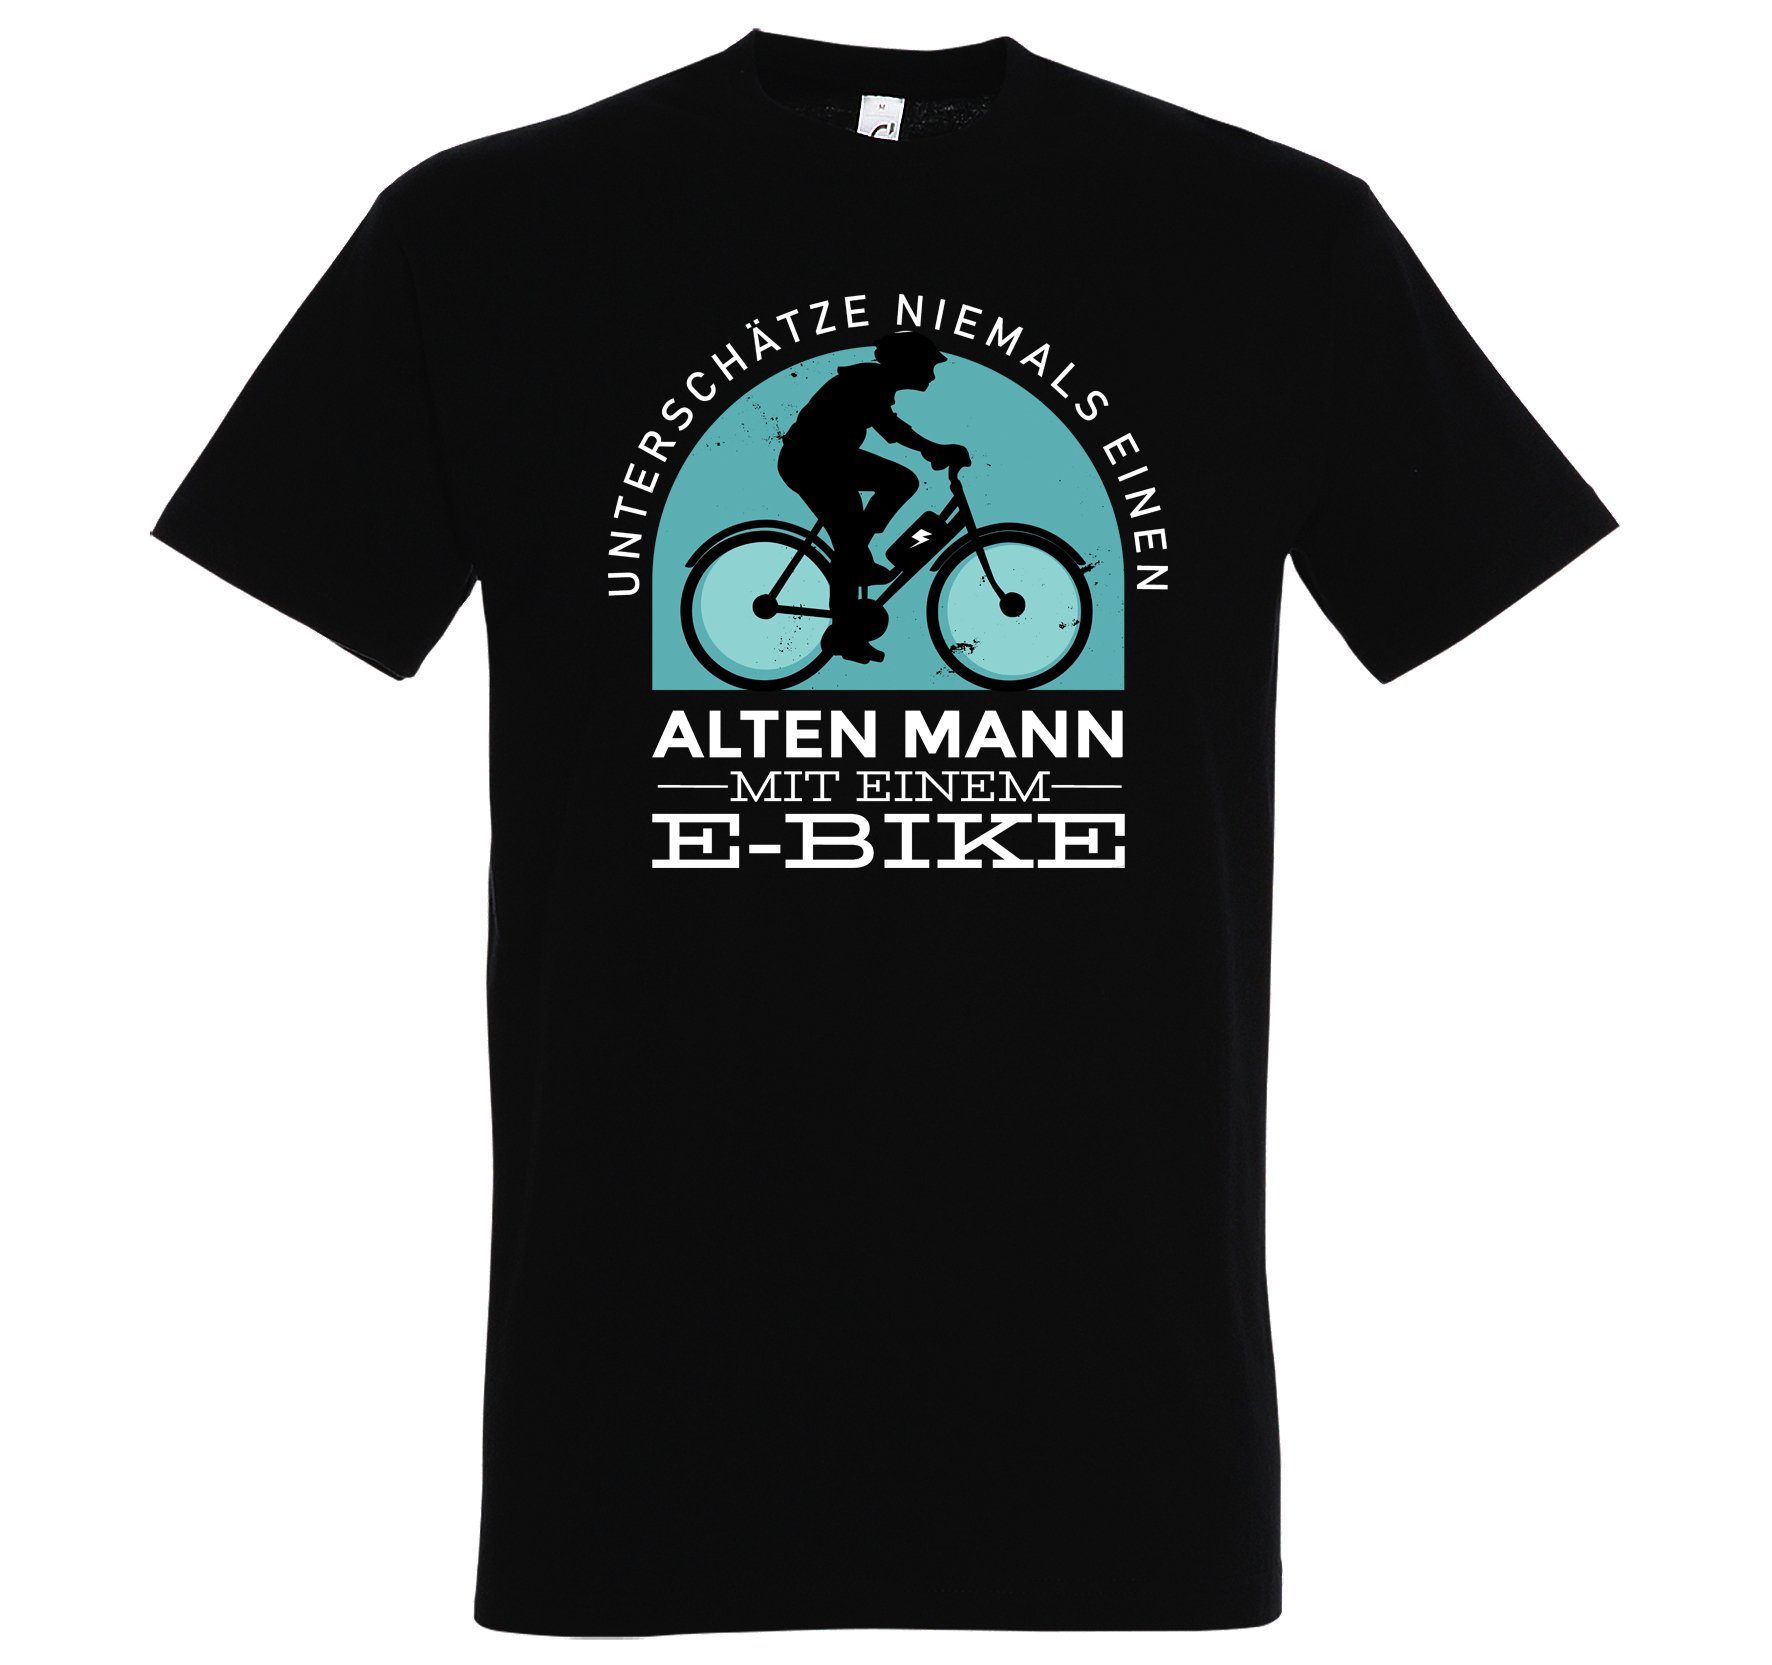 Youth Designz T-Shirt Alter Mann mit E-Bike Herren Shirt mit lustigem Fahrrad Frontprint Schwarz